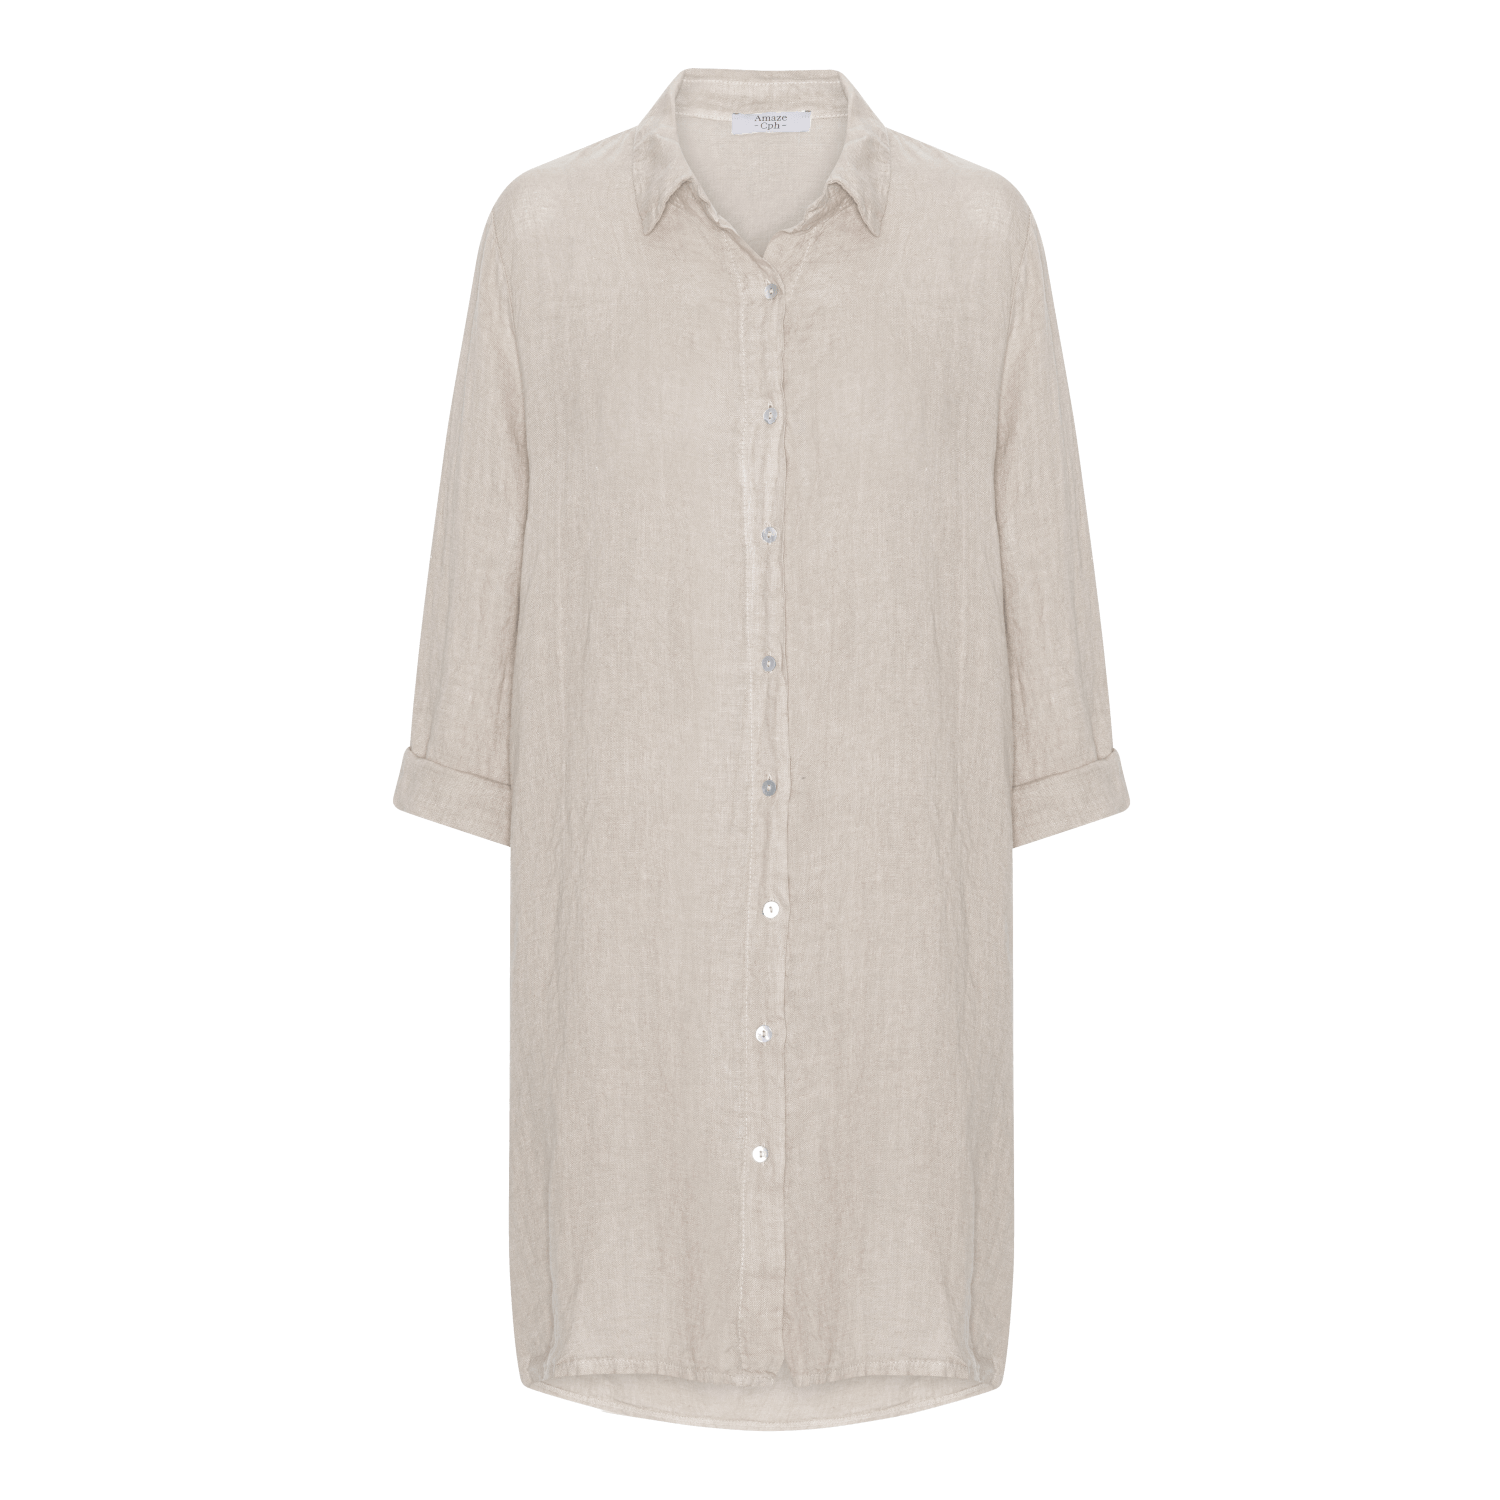 Long Linen Shirt - Sand - Amaze Cph - Sand - S/M